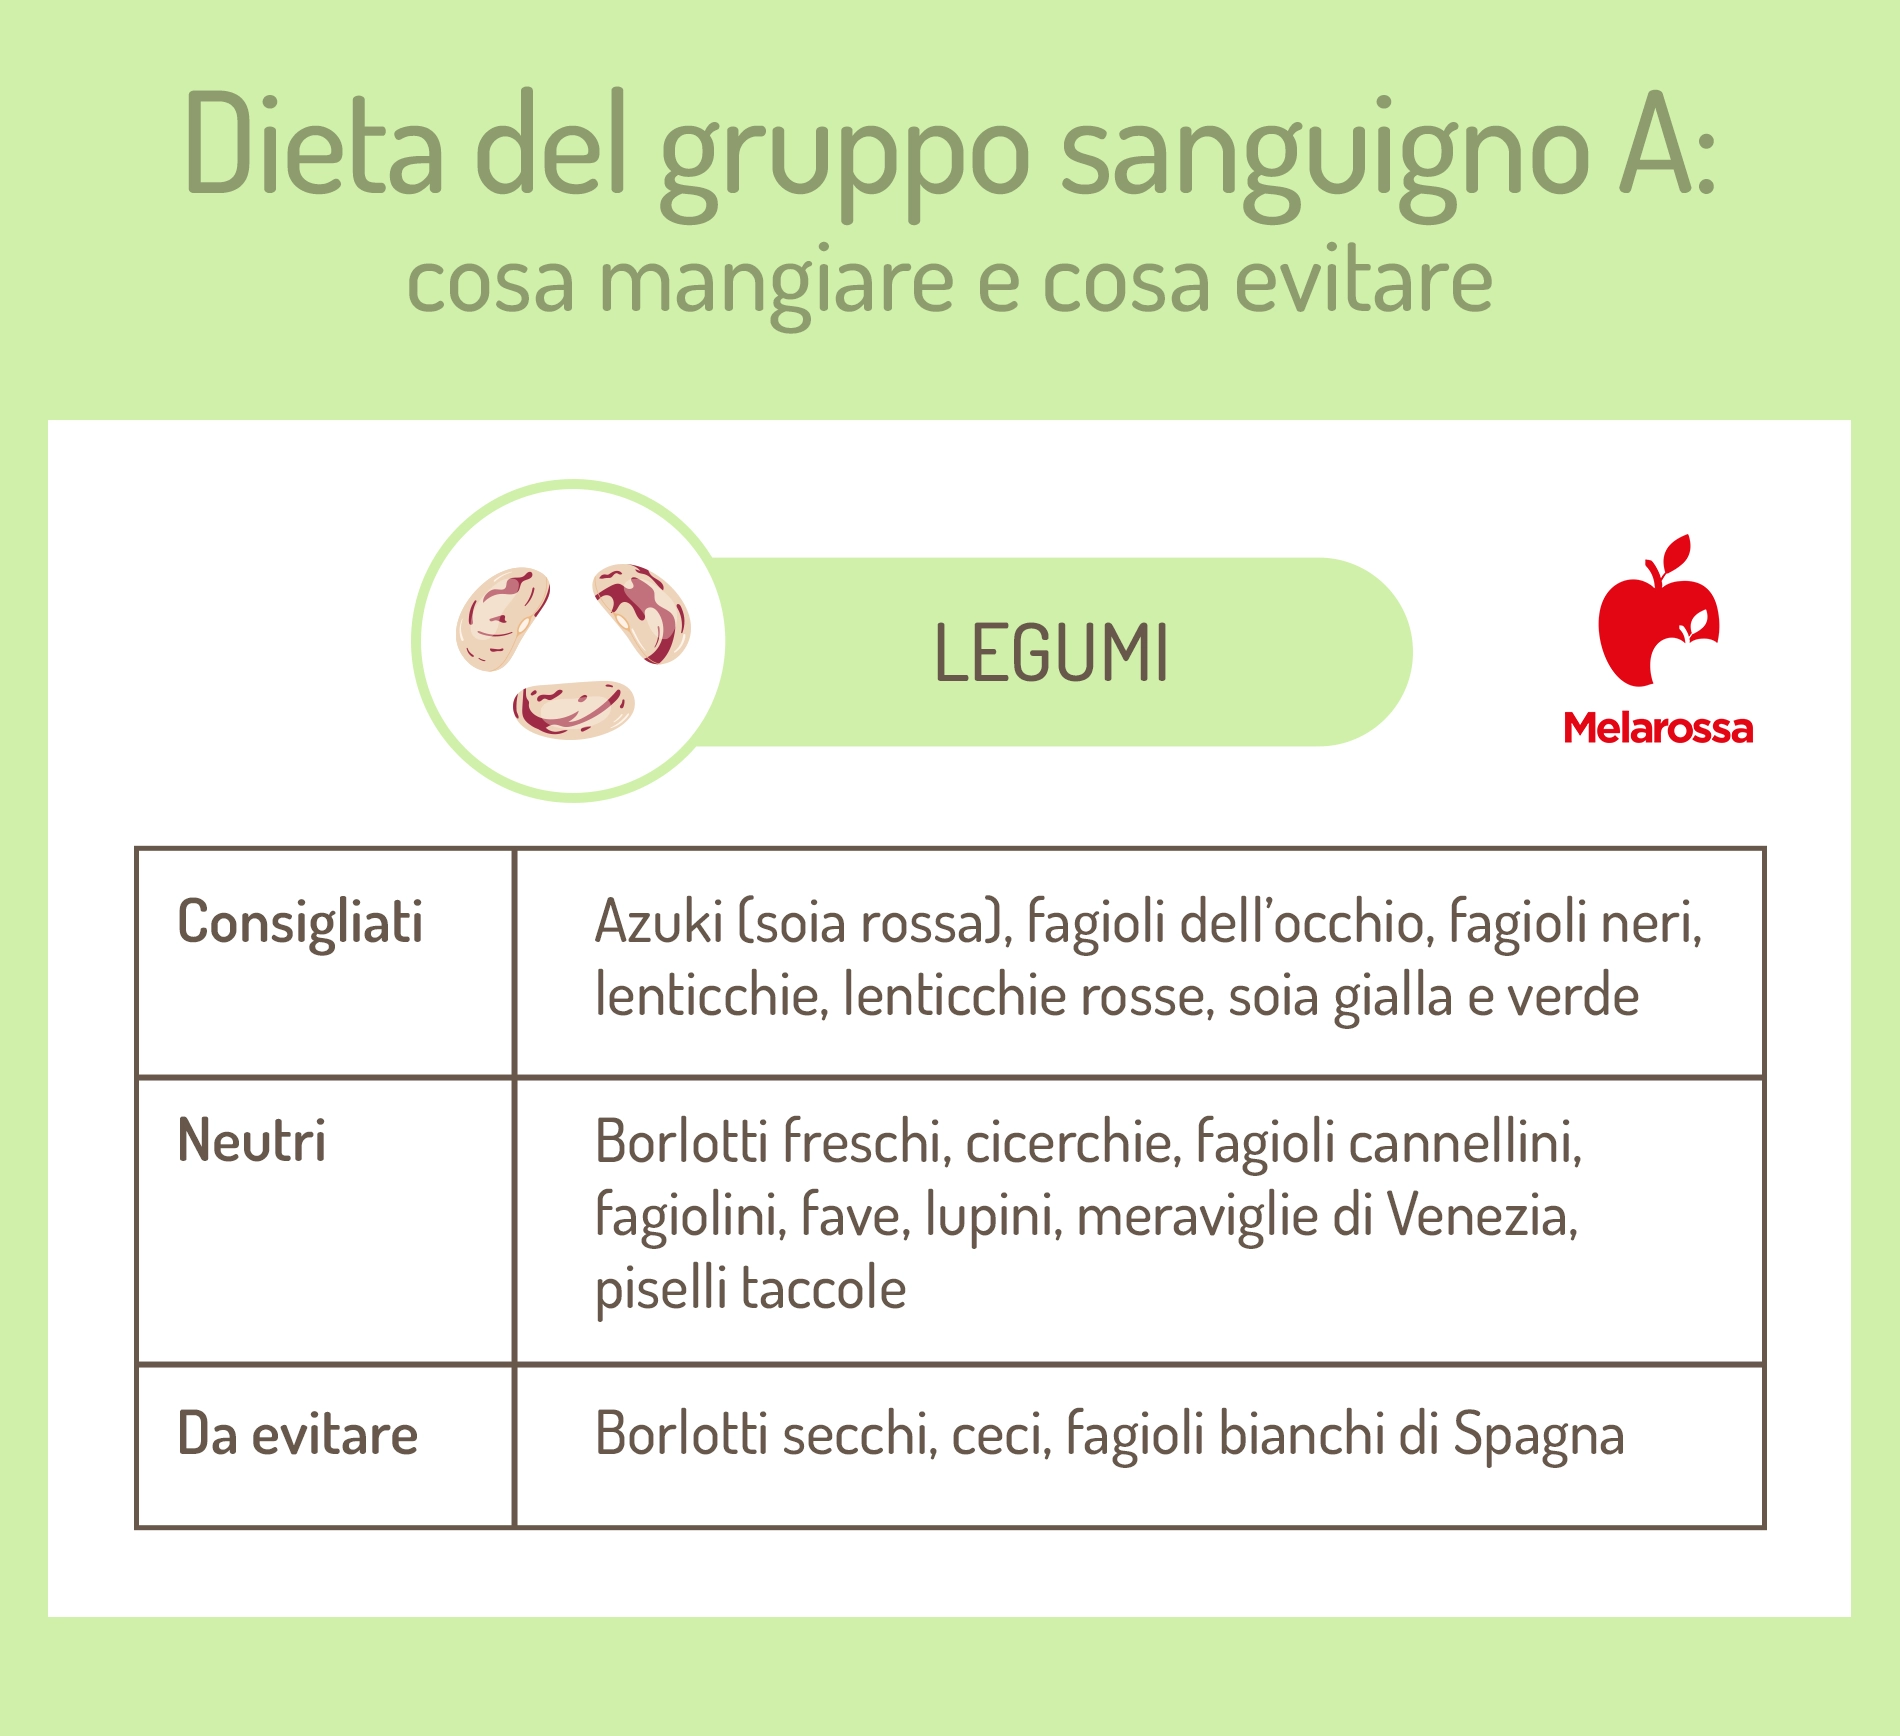 dieta gruppo sanguigno A: legumi